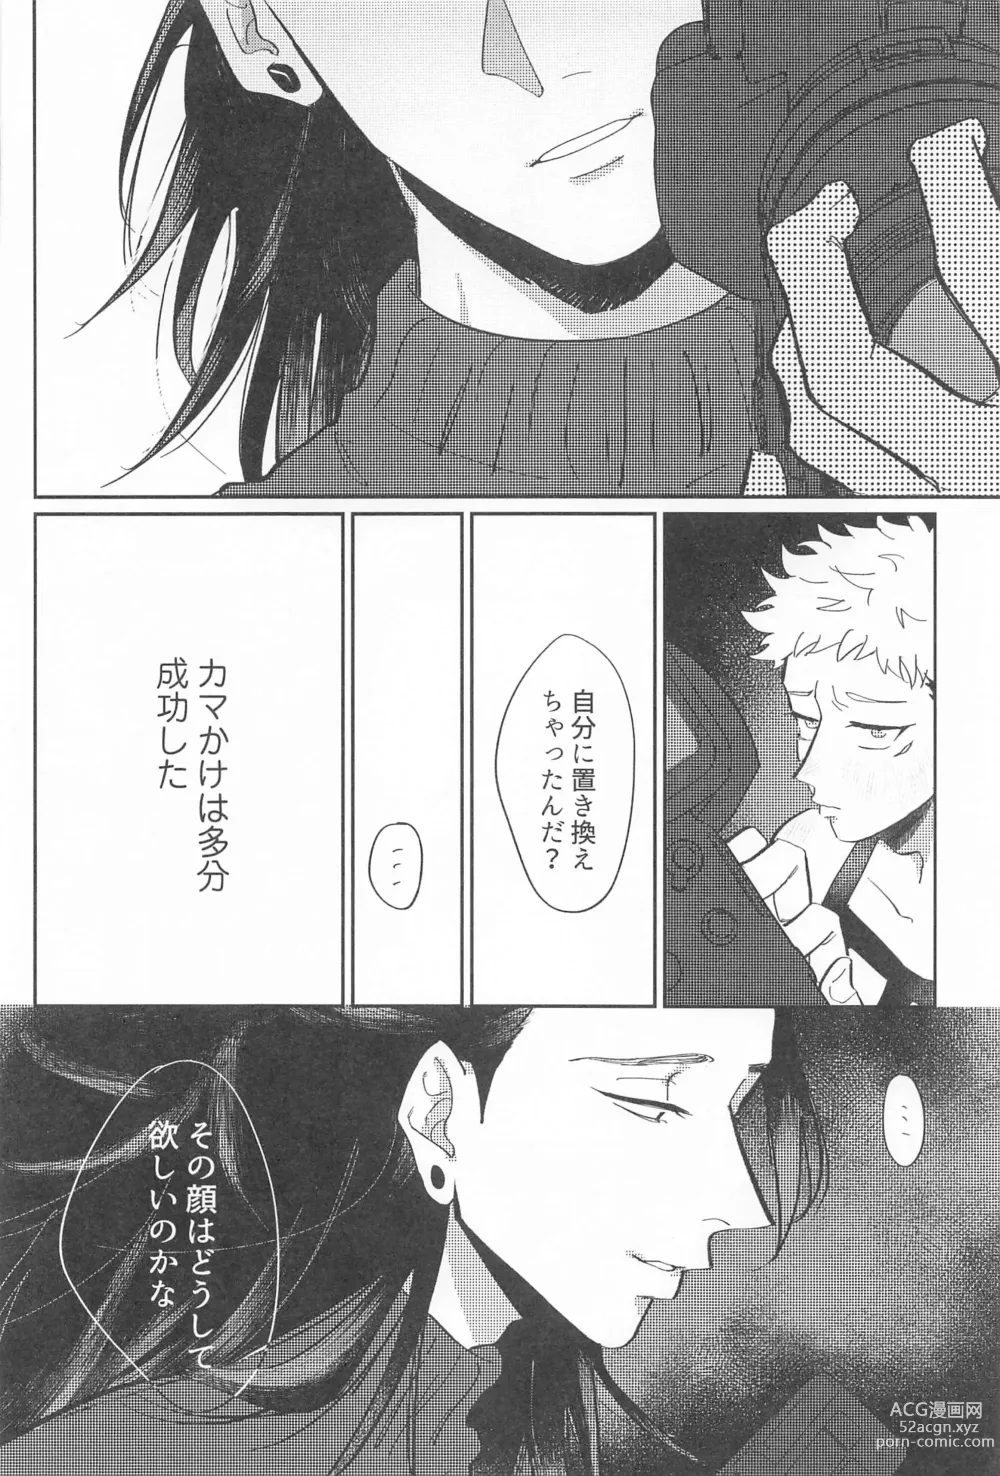 Page 29 of doujinshi Shikakukei no PENTAPRISM